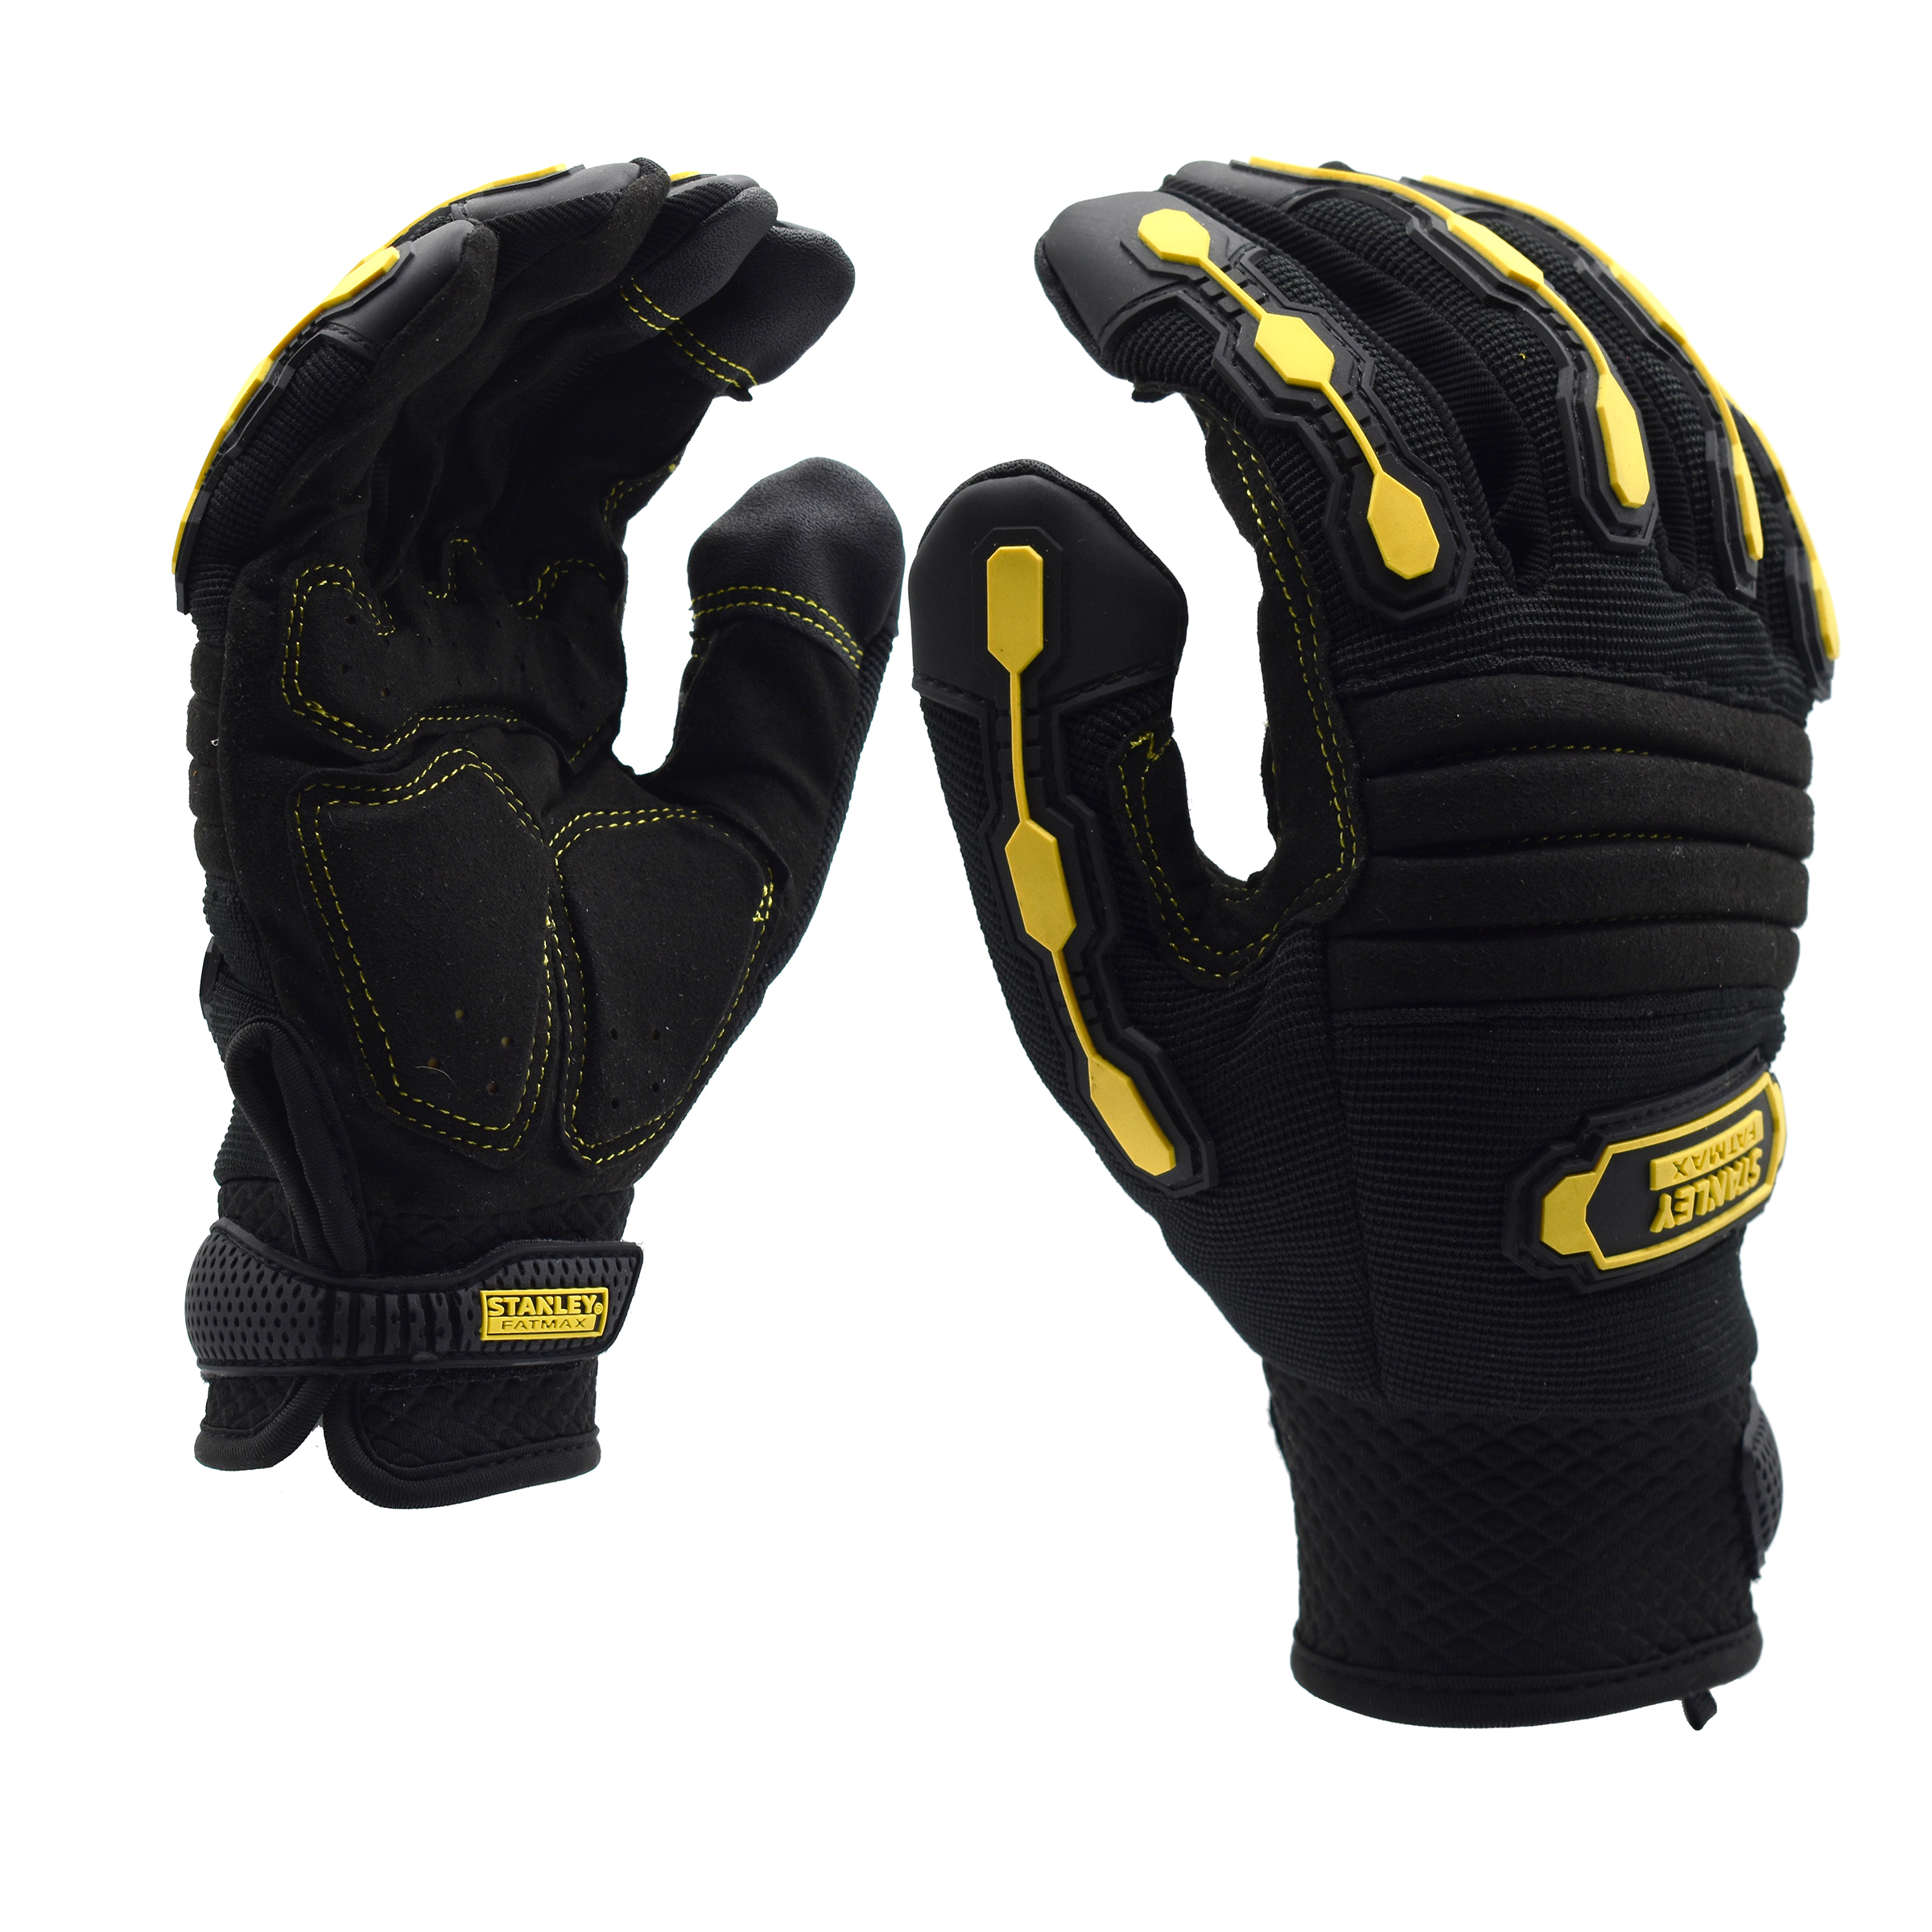 Stanley Fatmax Premium Work Gloves $17.99 (reg $35)